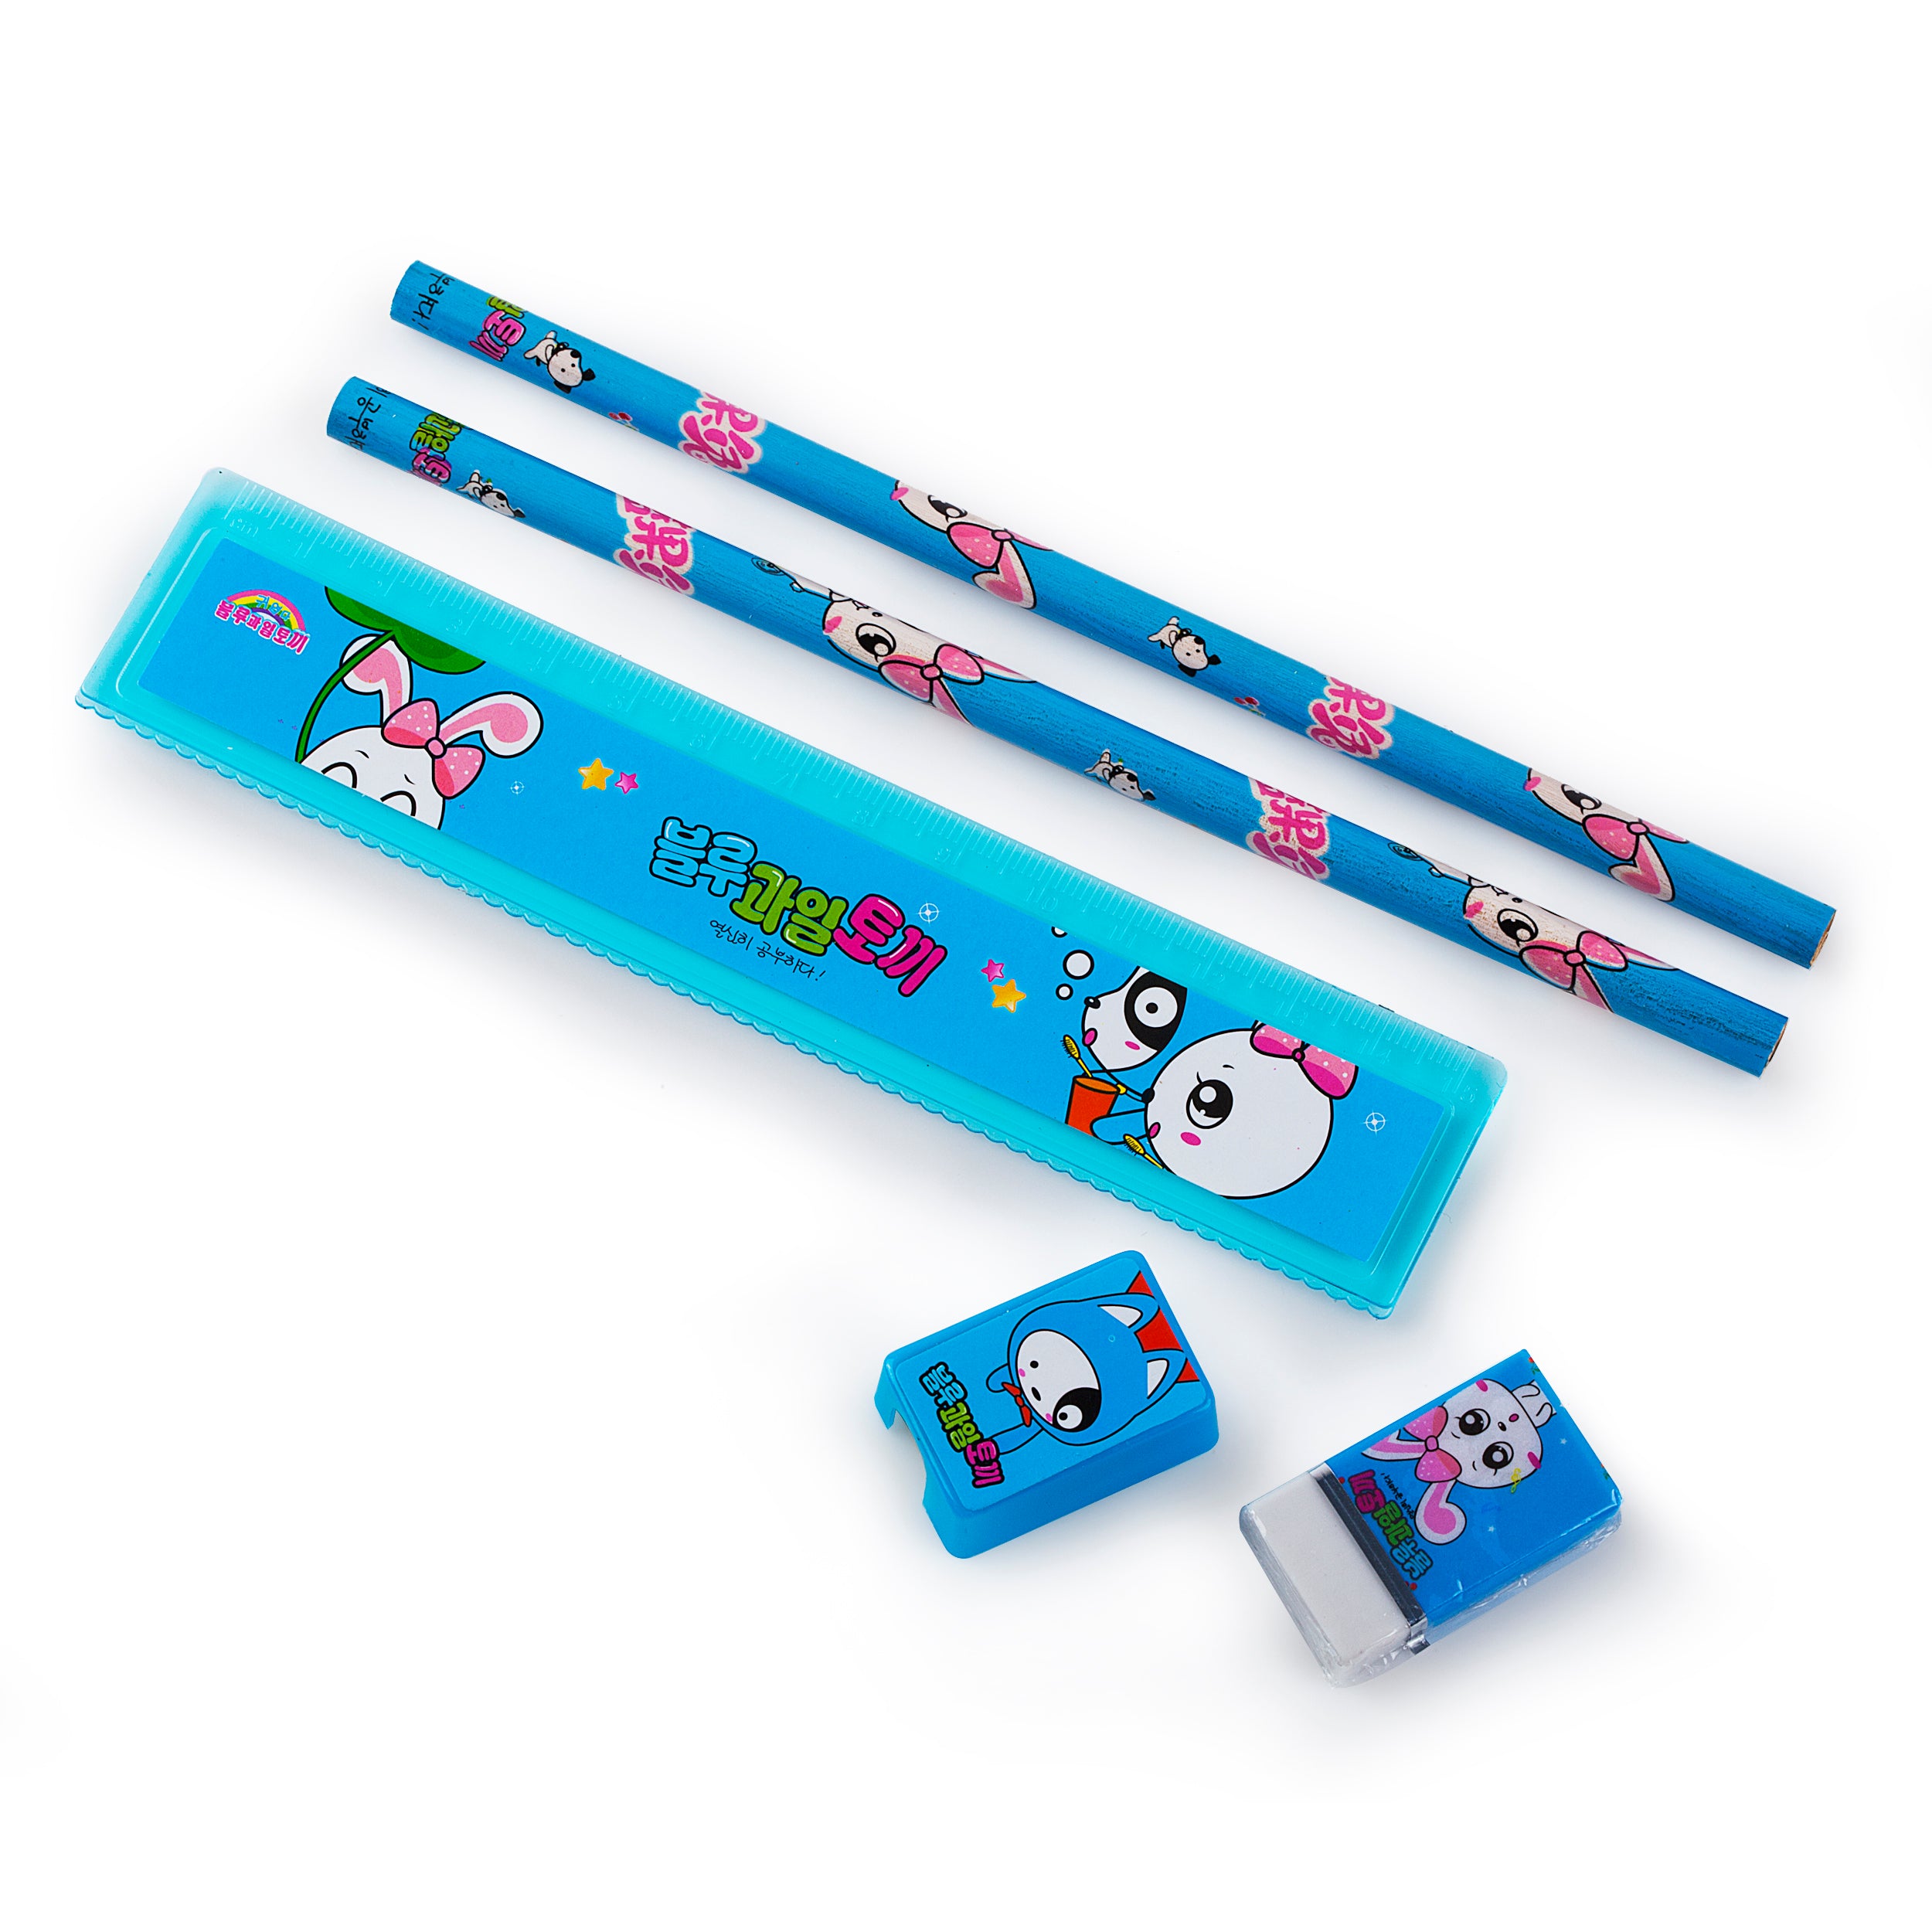 2 Pencils, Ruler, and Eraser Pack